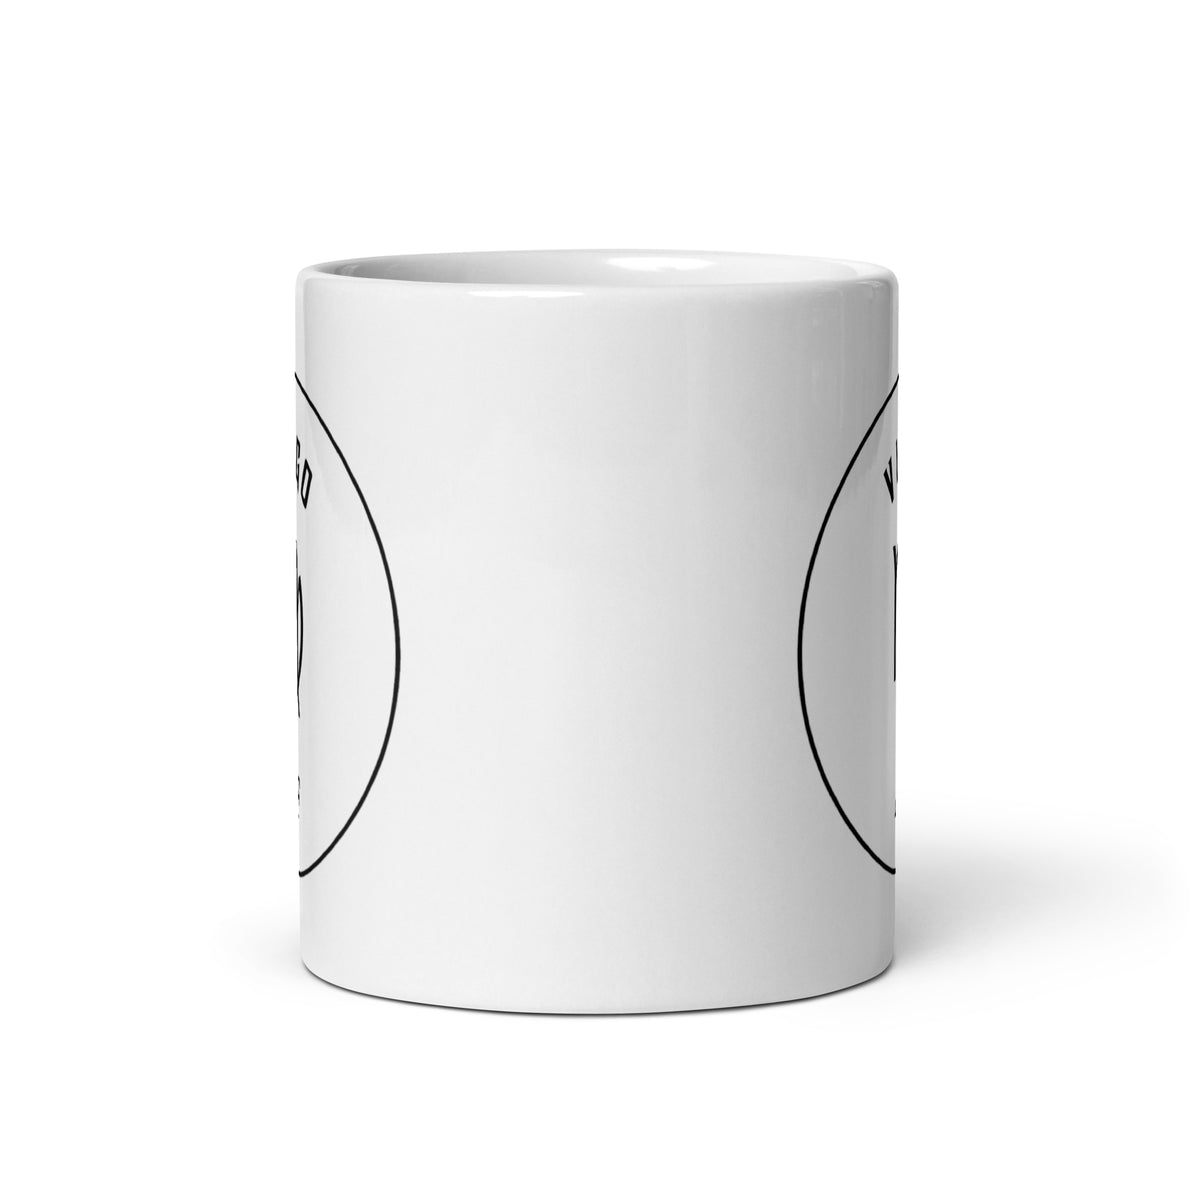 Virgo AF White Glossy Mug